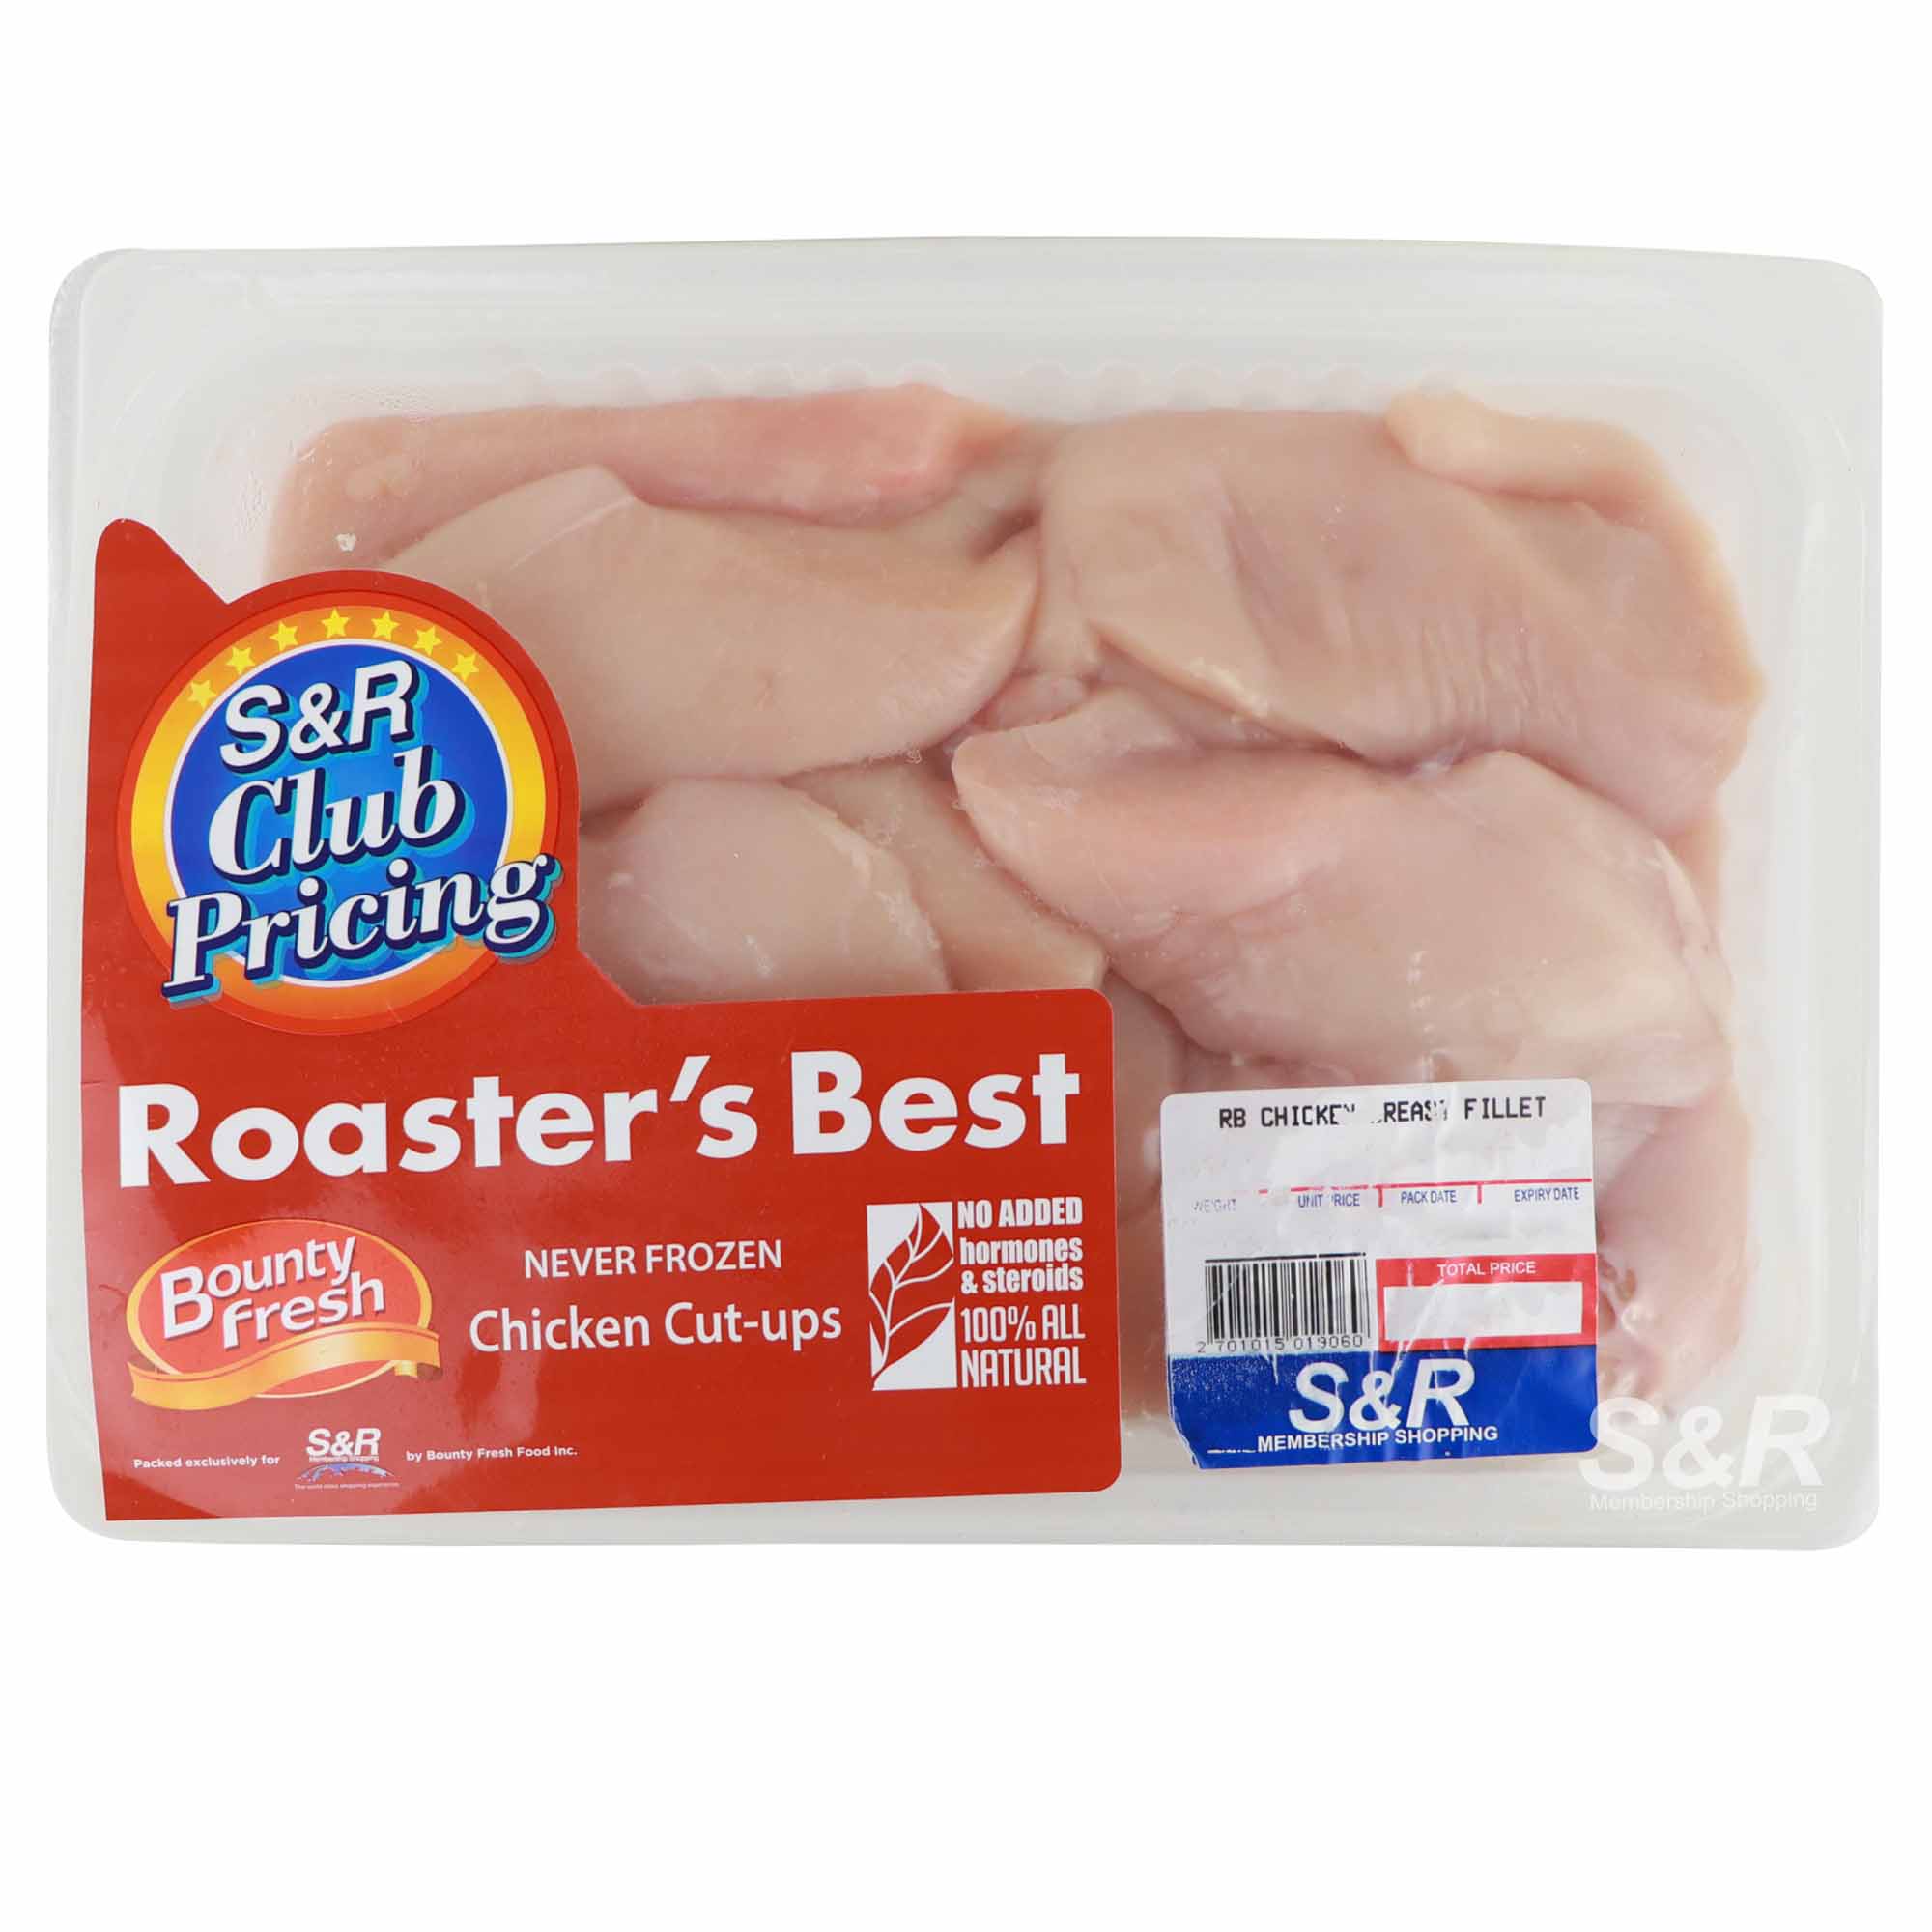 Bounty Fresh Roaster's Best Chicken Breast Fillet approx. 2.5kg